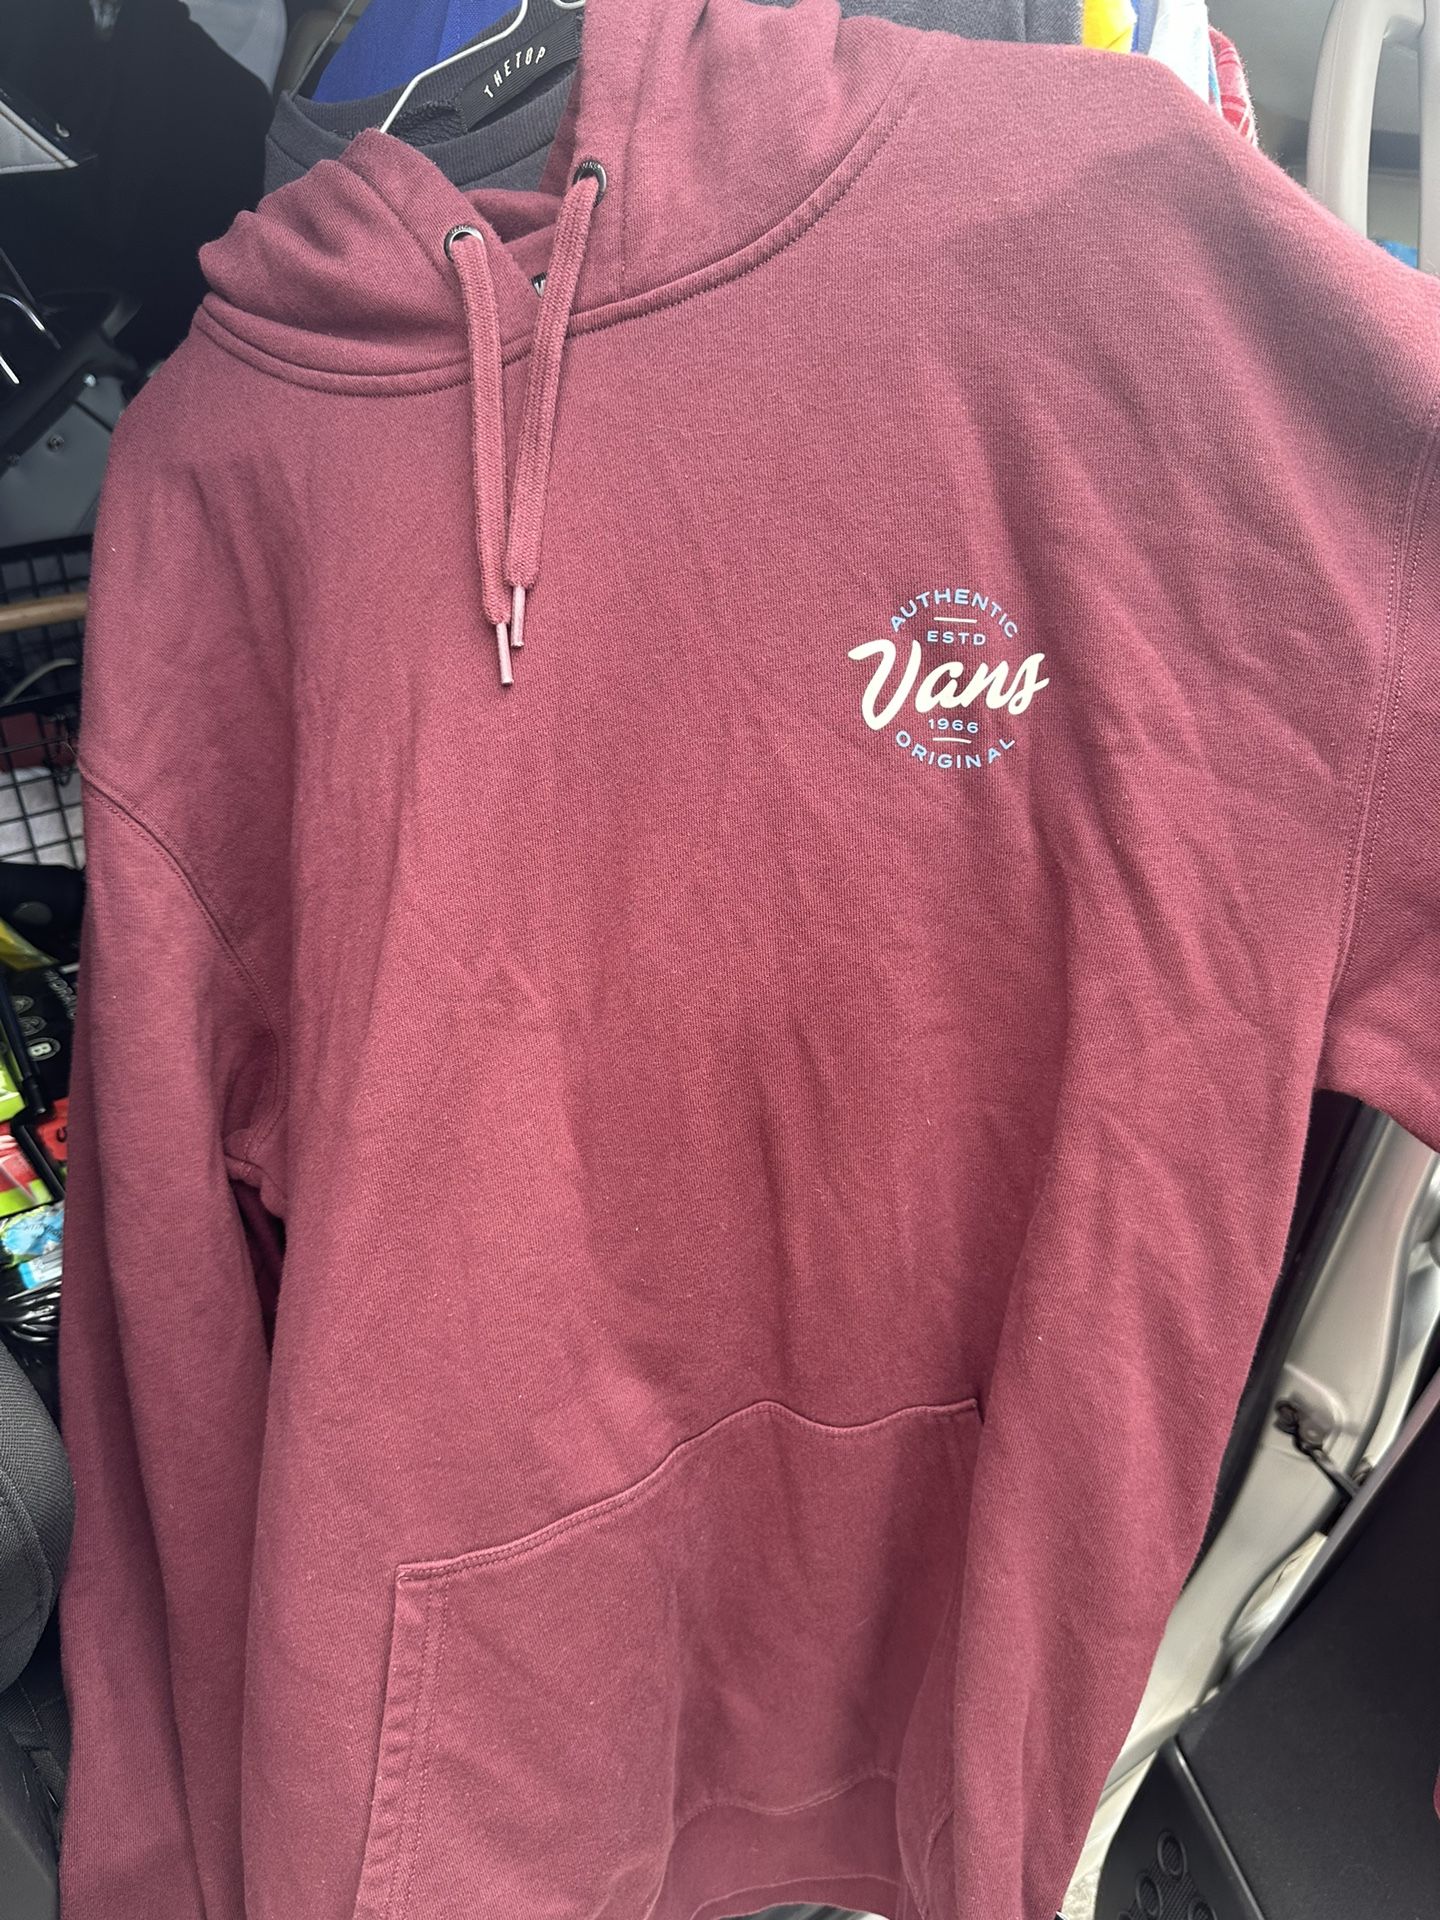 Vans hoodie  Men’s XL